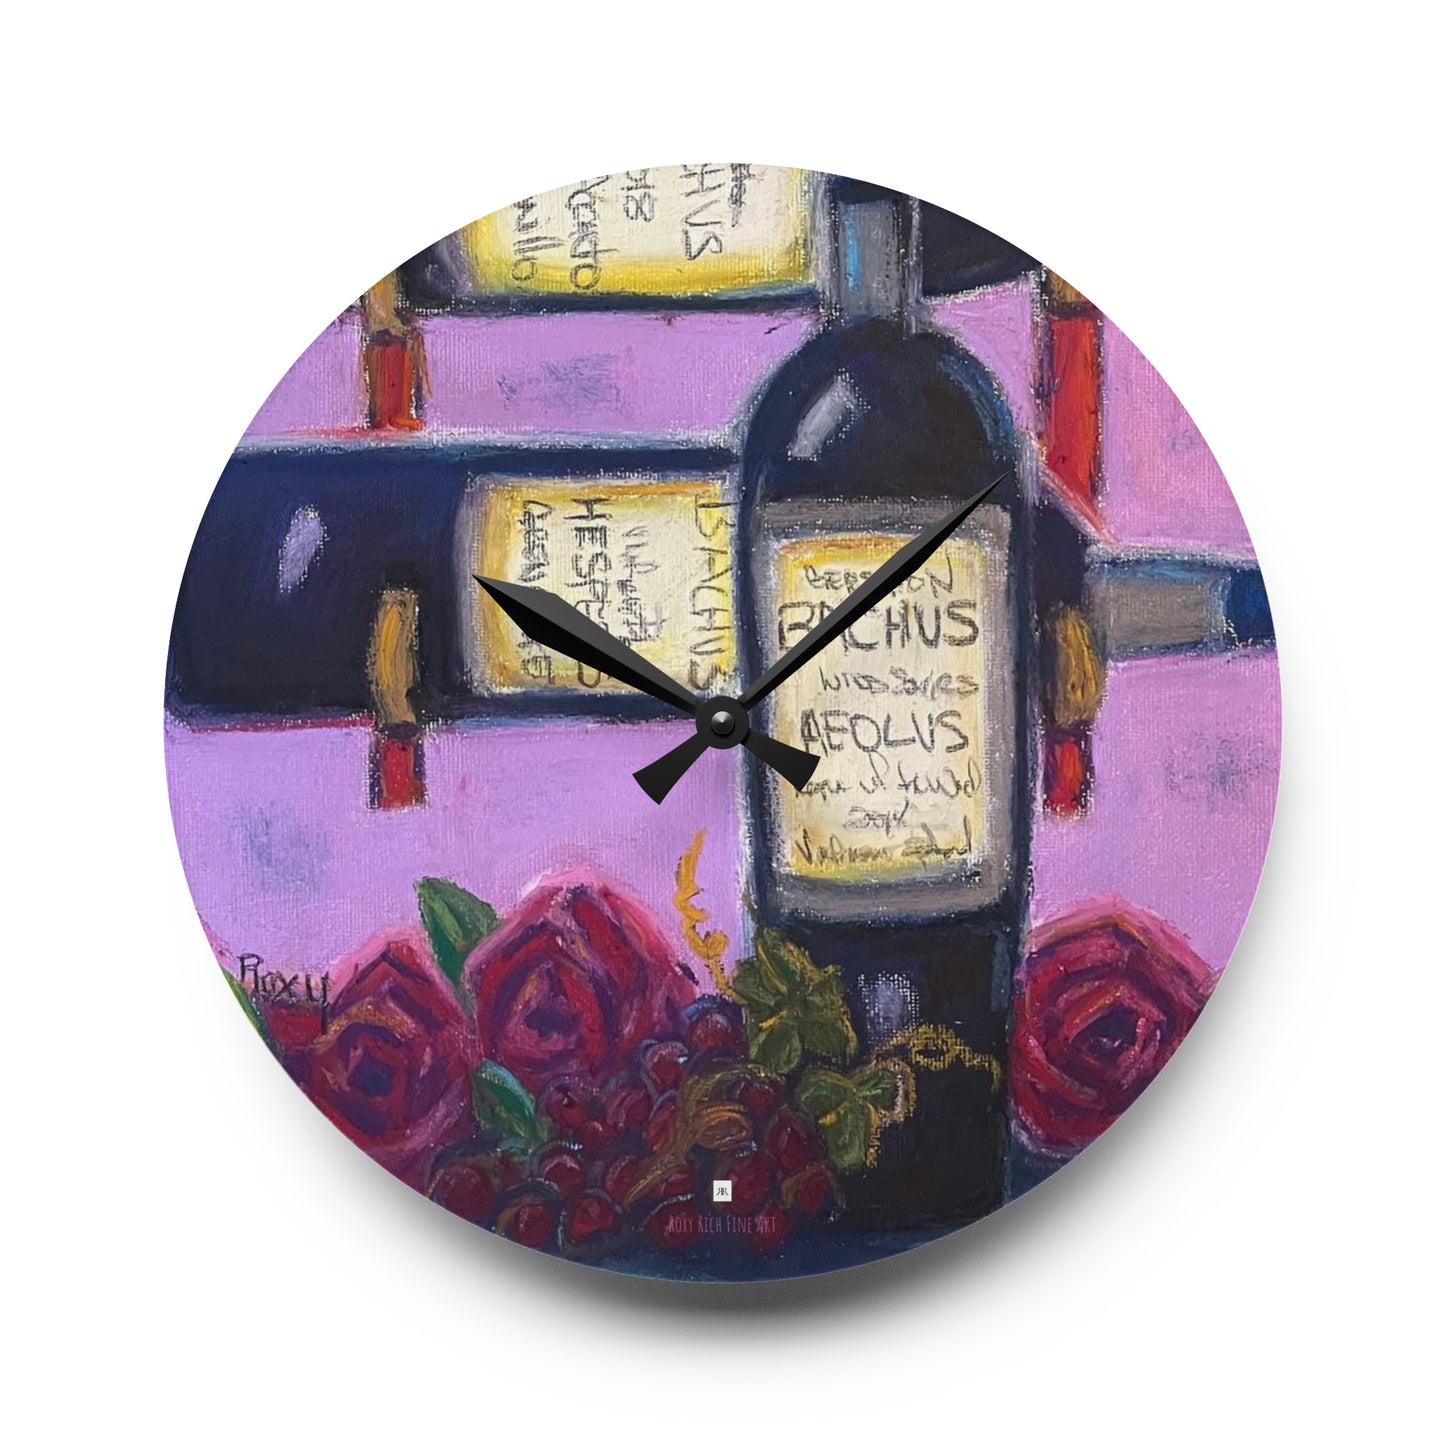 Bachus Reserves GBV Casier à vin et roses Horloge murale en acrylique 